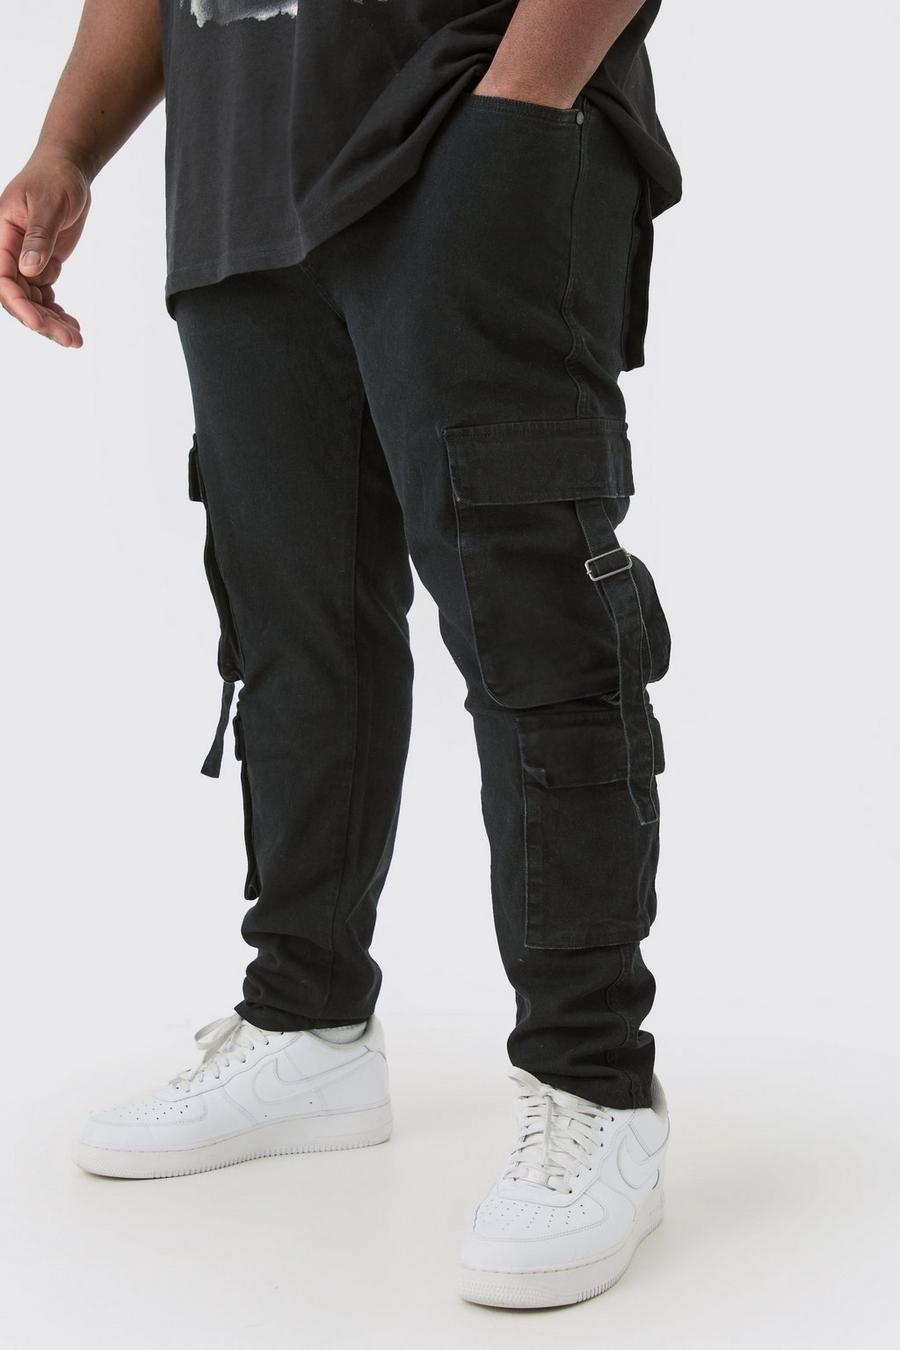 Jeans Plus Size Skinny Fit in Stretch con tasche Cargo e dettagli neri, True black